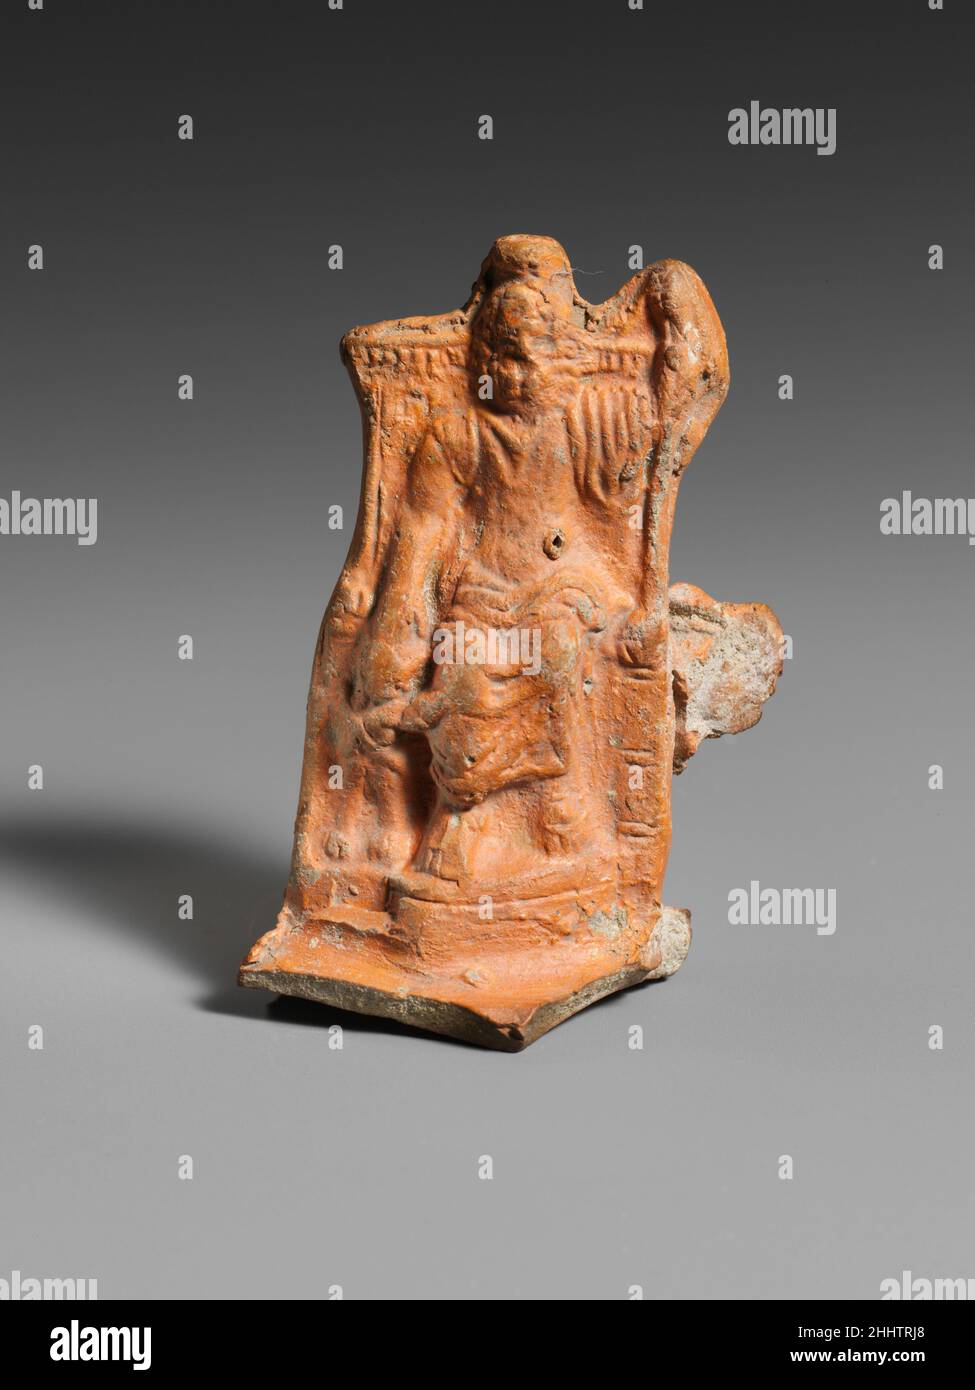 Mango de lámpara de terracota del siglo 2nd d.C. Zeus Serapis romano,  entronizado, sostiene un cetro en su mano izquierda y descansa su mano  derecha sobre la cabeza de Cerberos, el perro